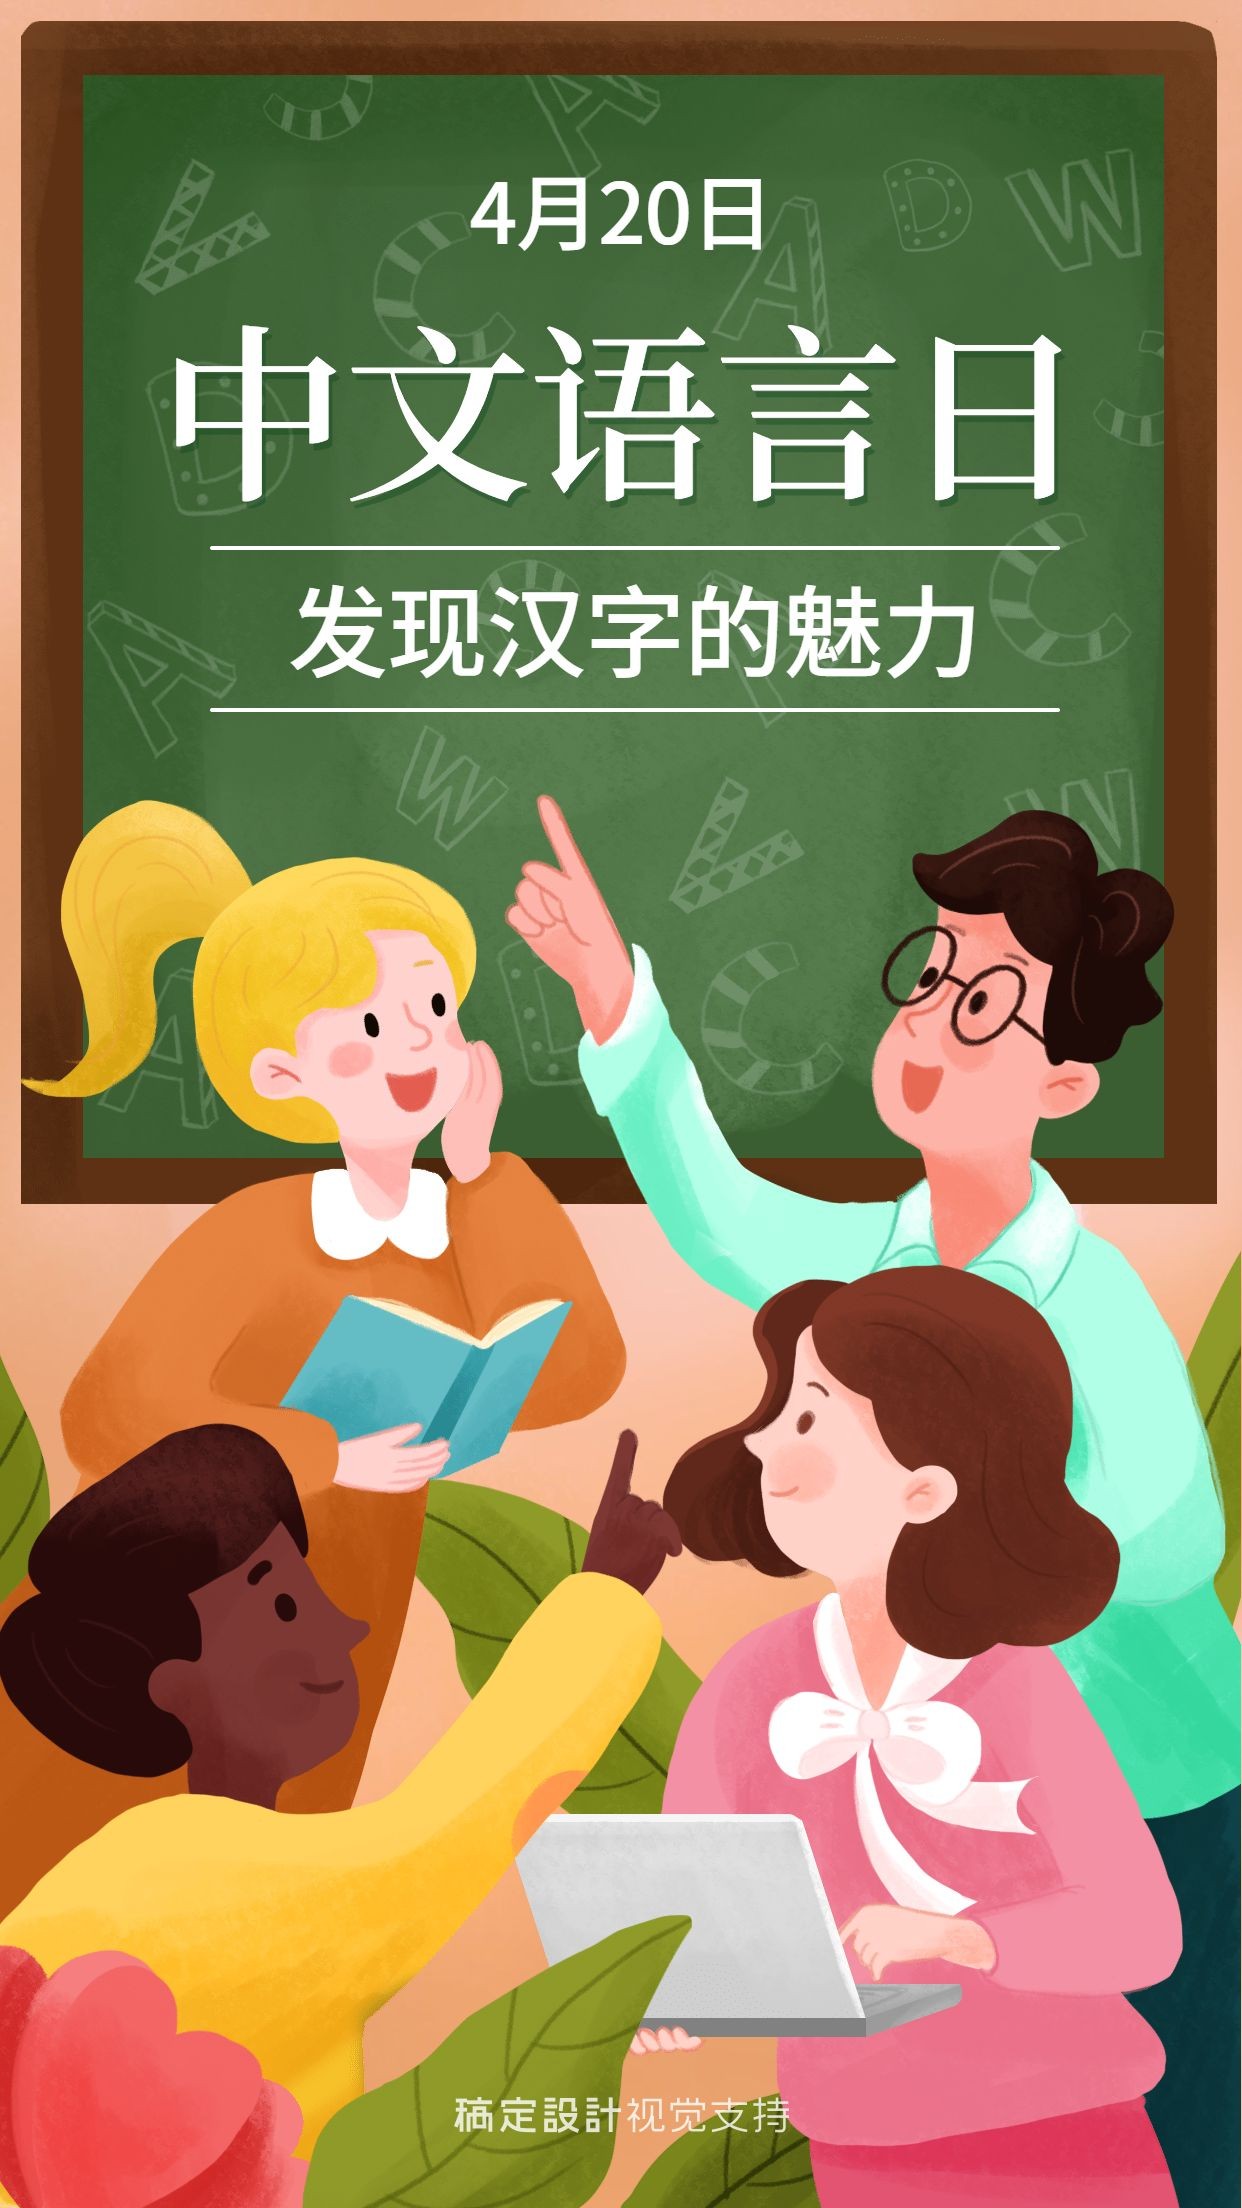 中文语言日宣传手绘插画海报